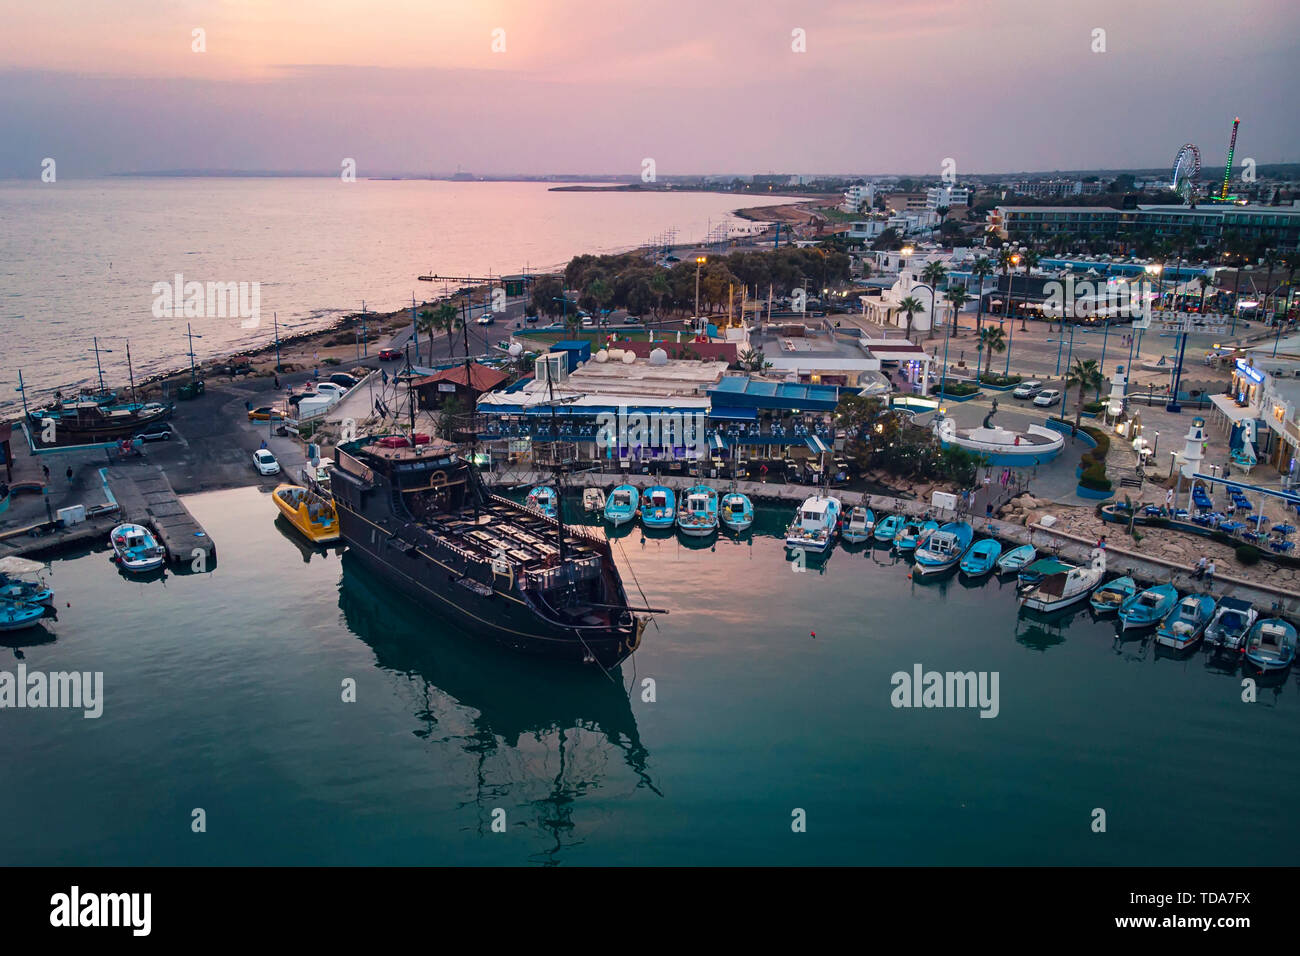 Viele Schiffe sind im Hafen in der Nähe der Ufer auf dem Hintergrund einer schönen Sonnenuntergang. Mediterranen Küste von Zypern, Ayia Napa. Stockfoto